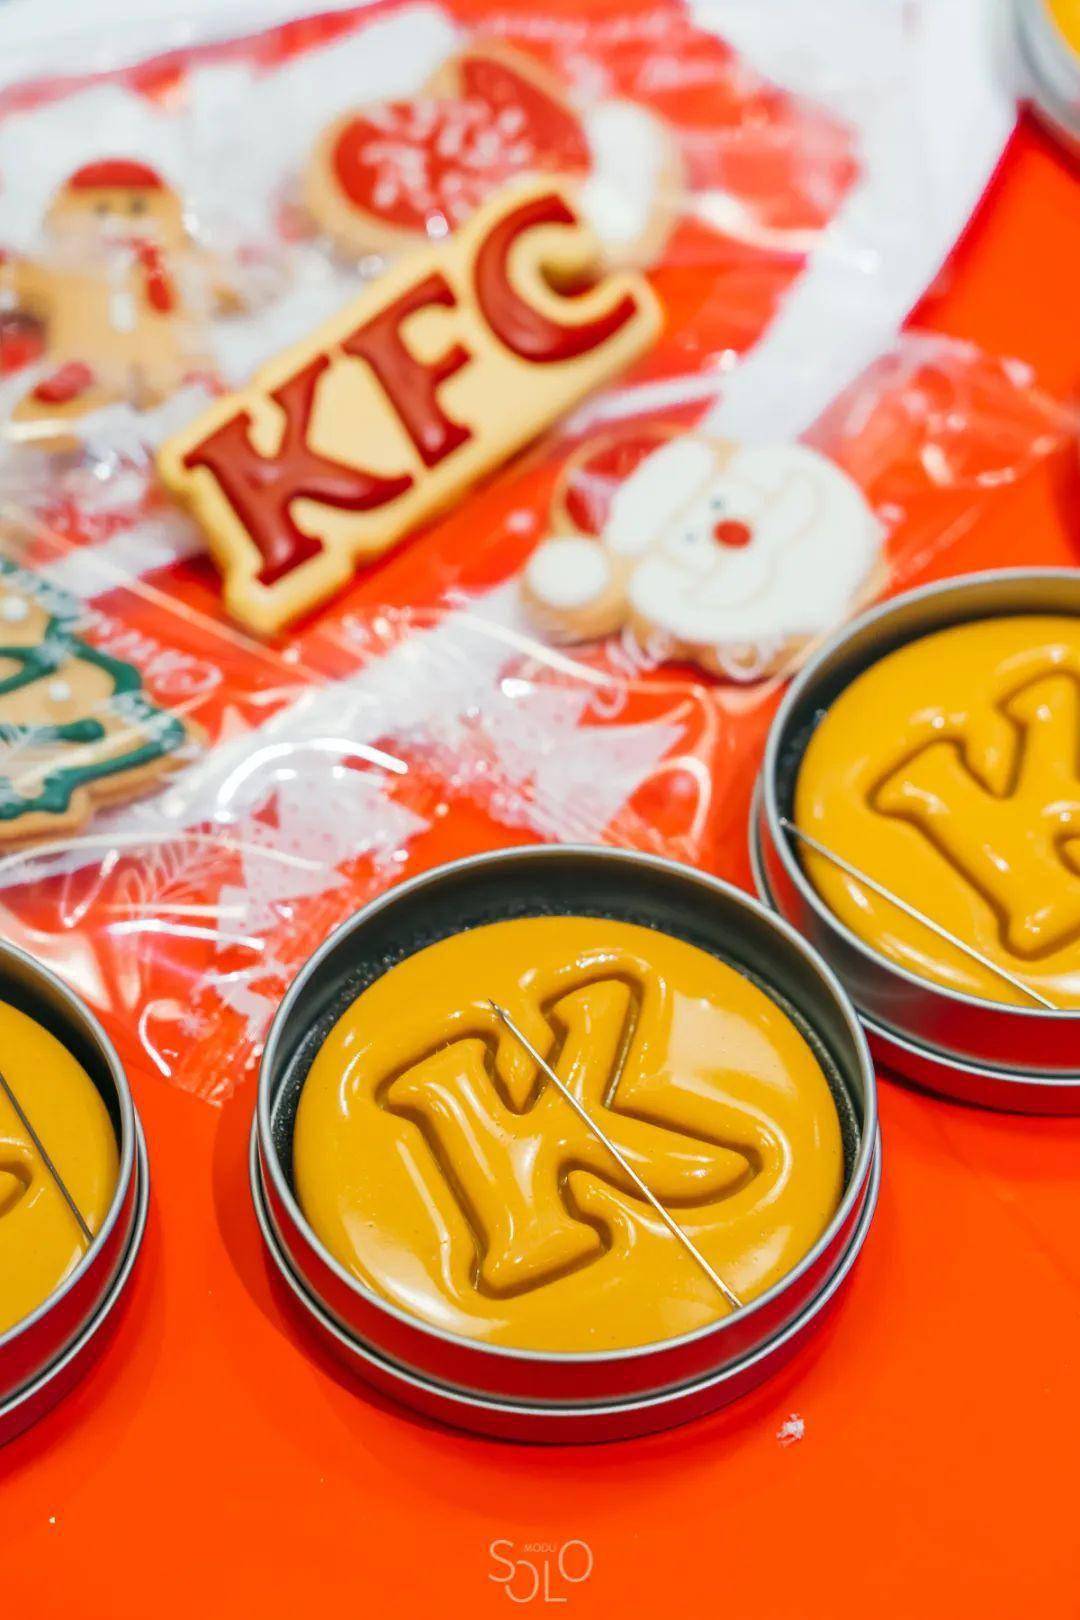 性的logo刻在糖饼上在本次派对中开设「kfc专场」聚会必备的《鱿鱼